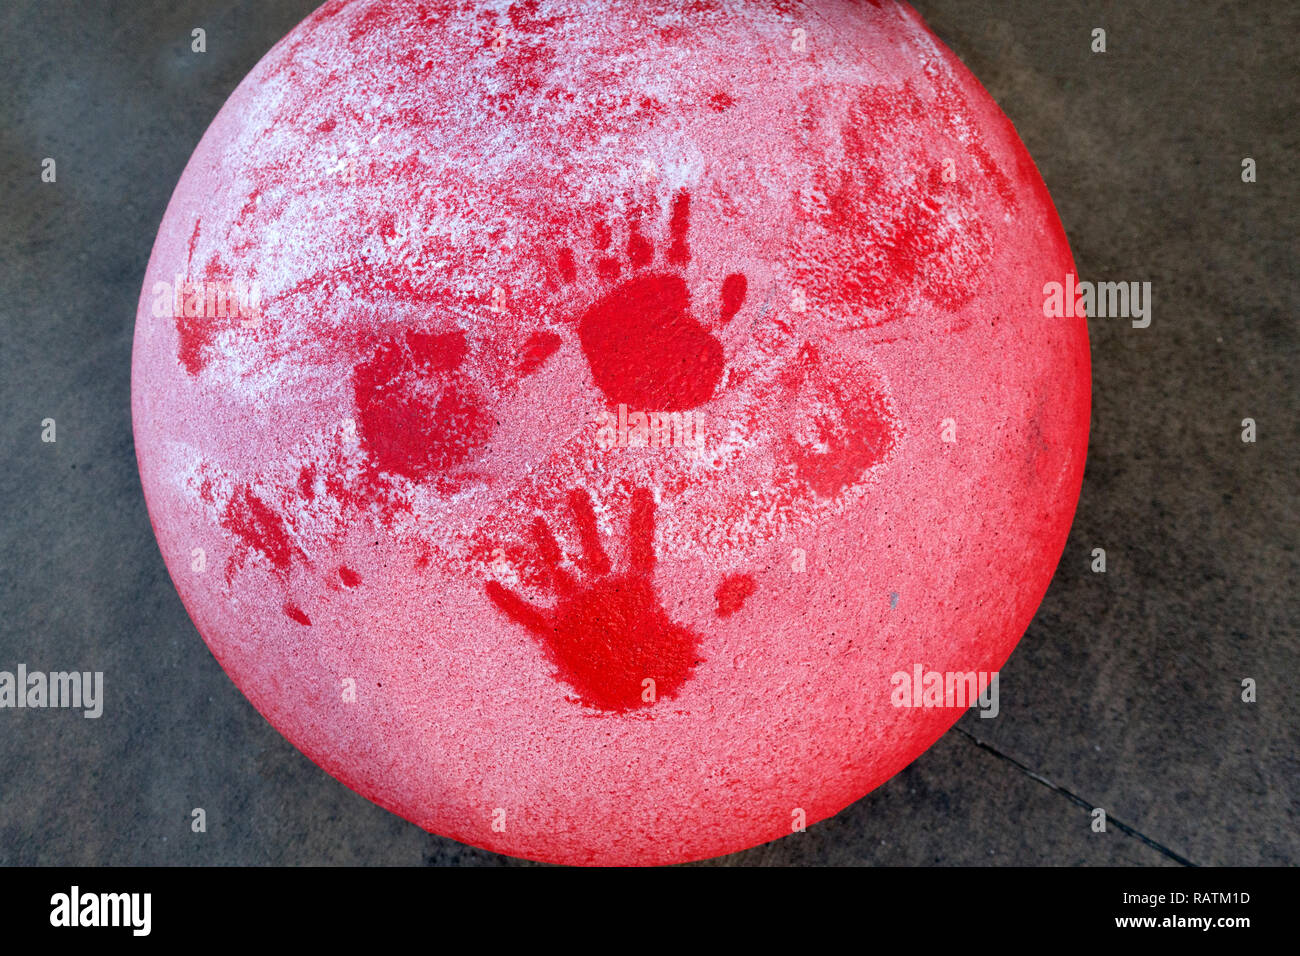 De surface artistiques un feu rouge à la main standard imprime dans la neige. St Paul Minnesota MN USA Banque D'Images